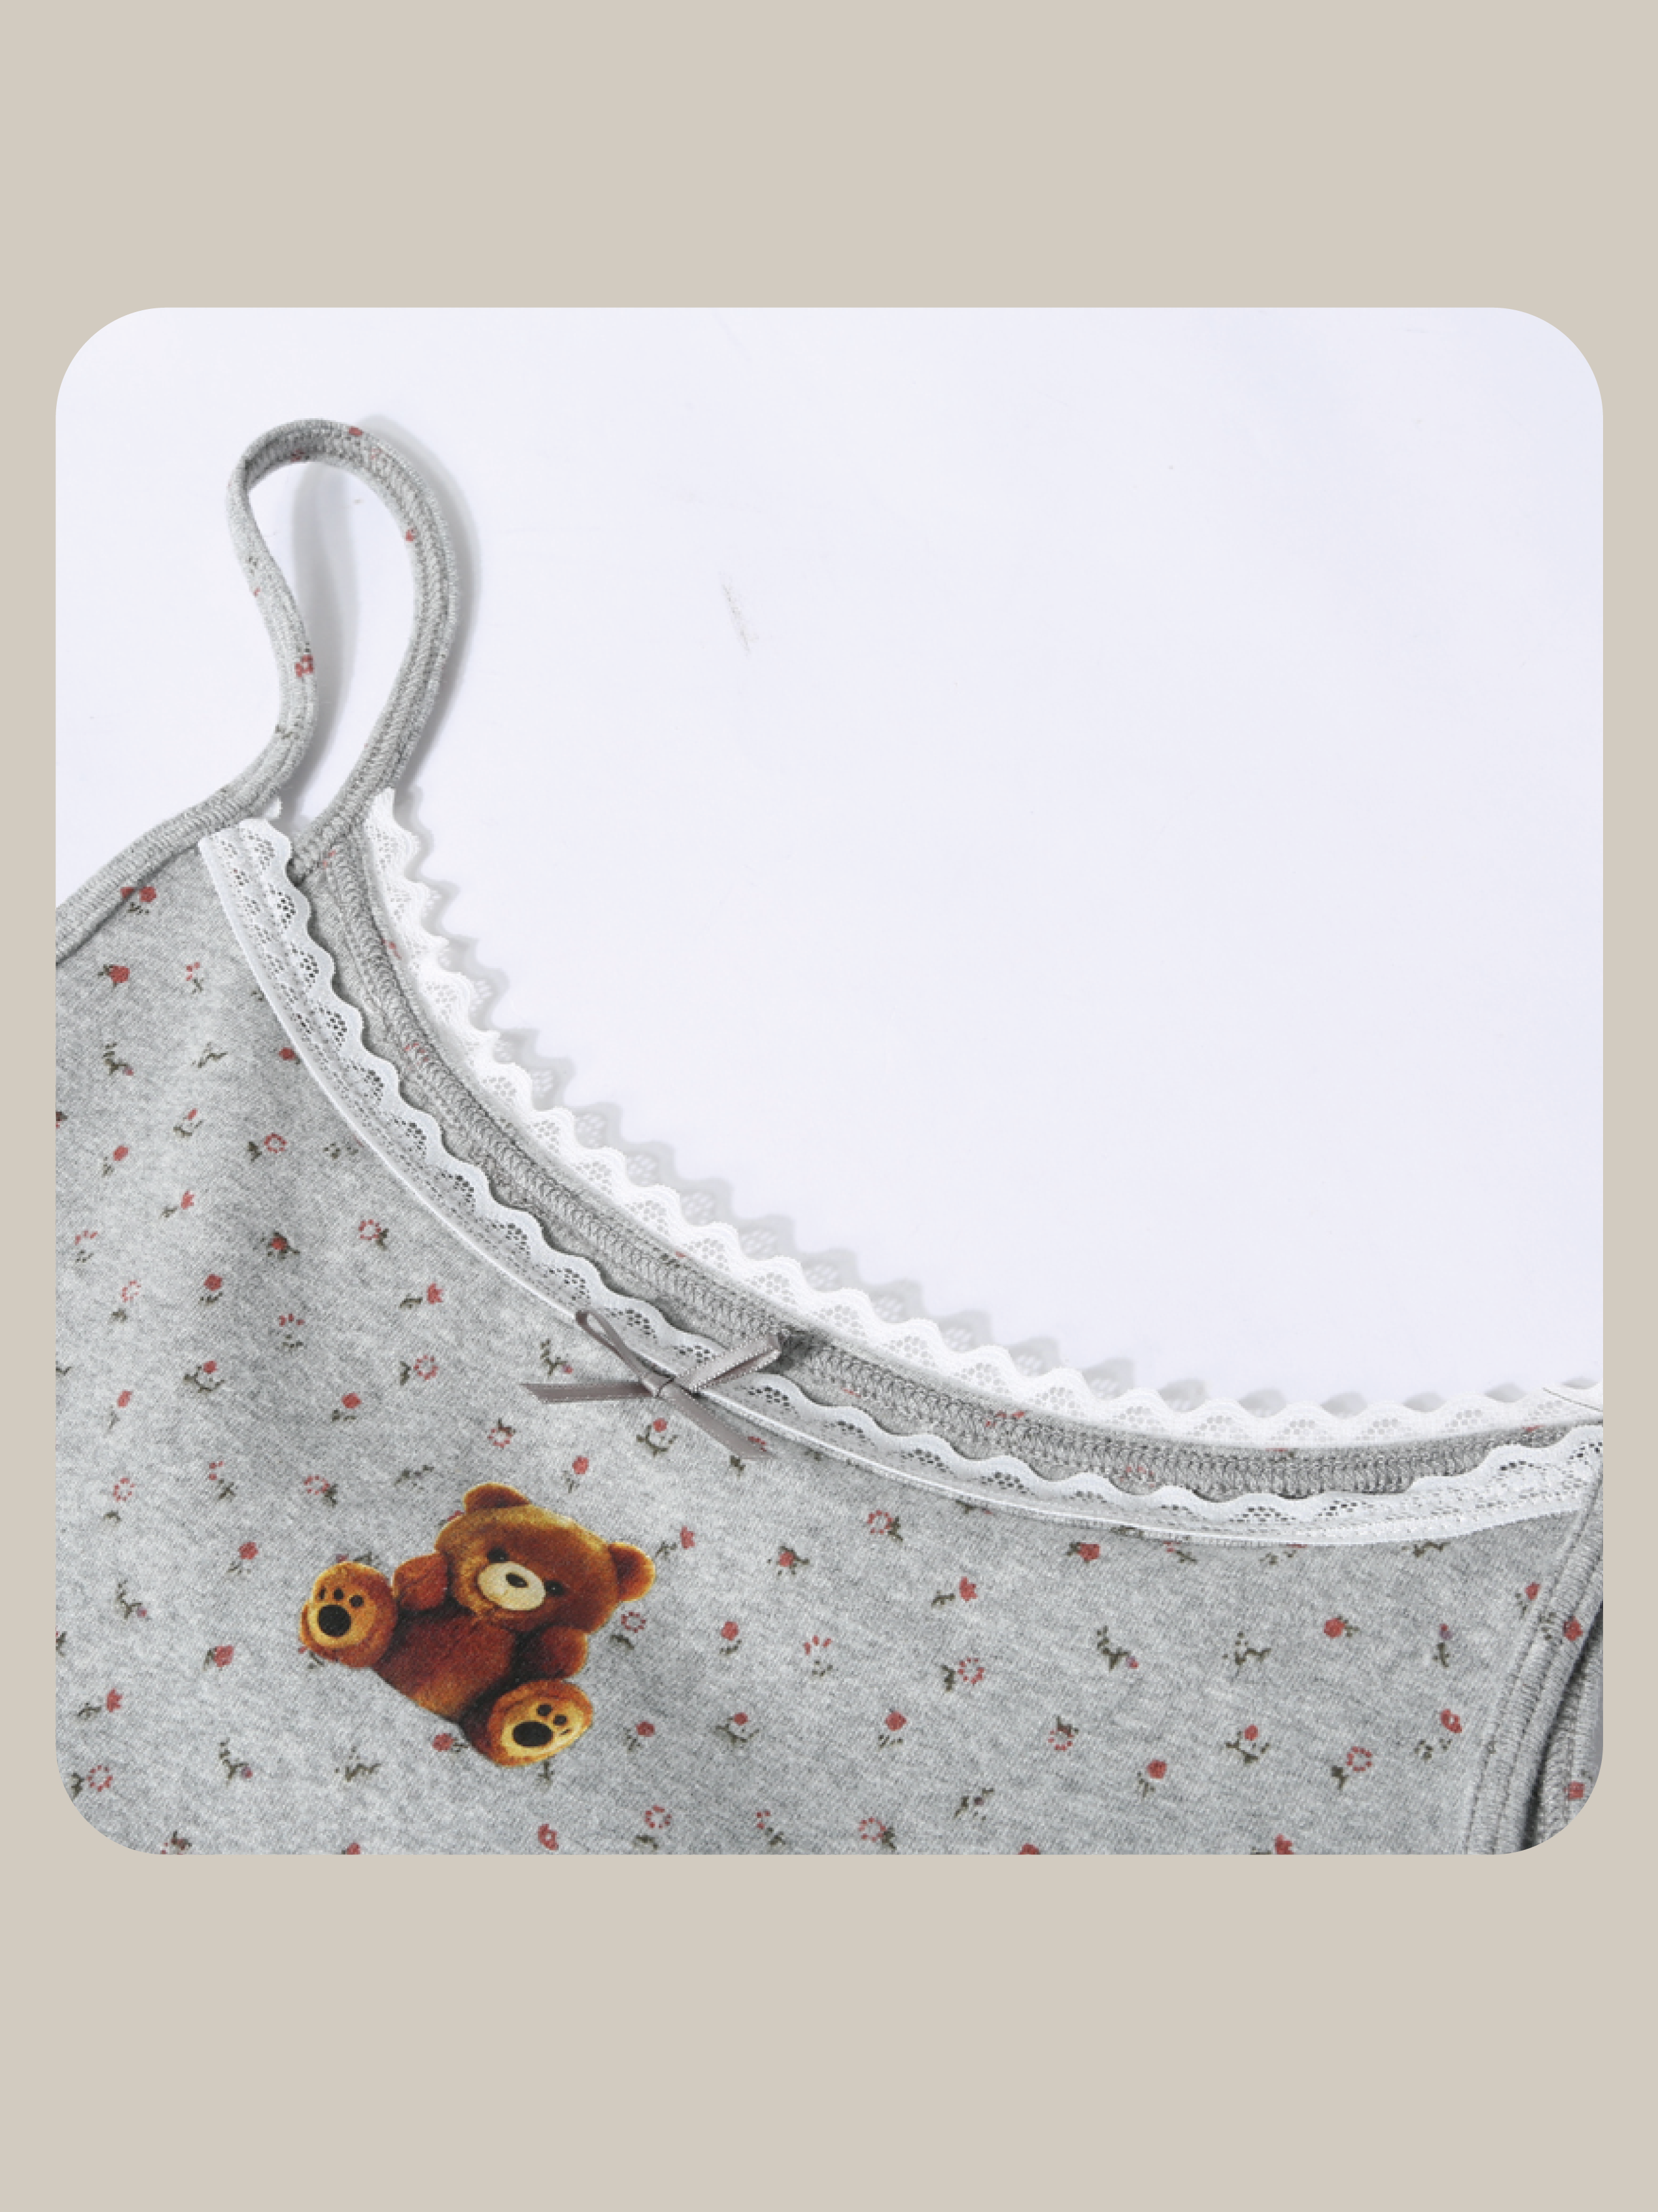 Floral Print Tiny Bear Cami/フローラルプリントタイニーベアキャミ